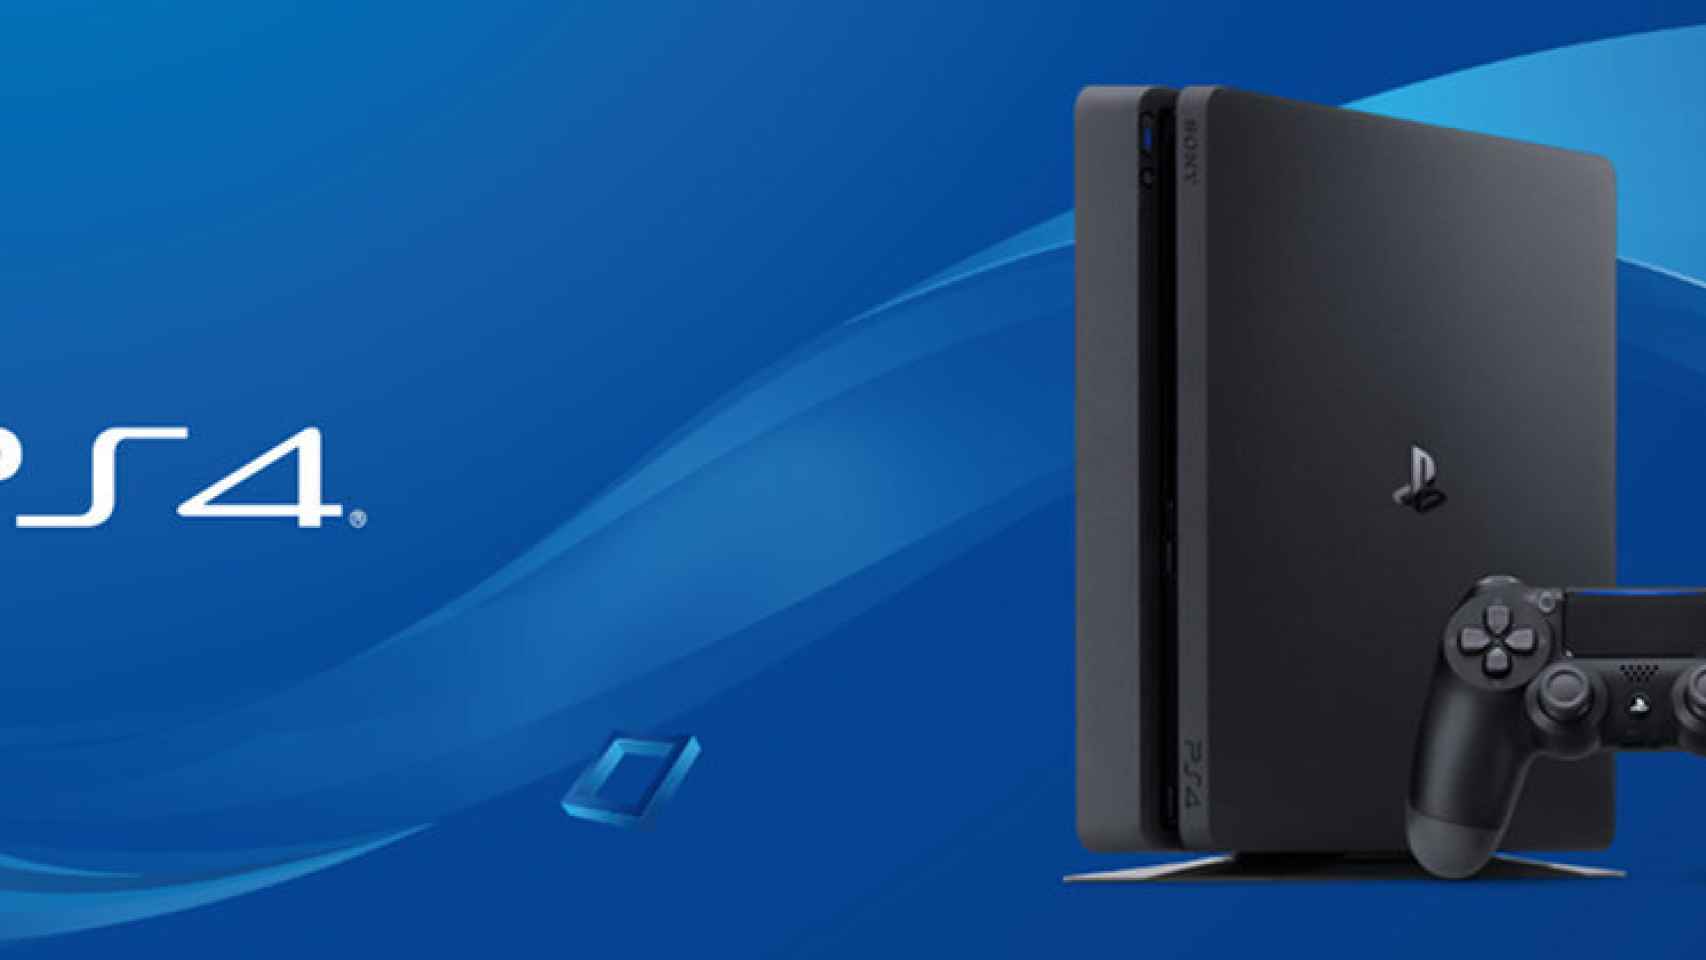 Desempacando trigo en voz alta La Playstation 4 ha sido hackeada y ya es posible ejecutar copias de juegos